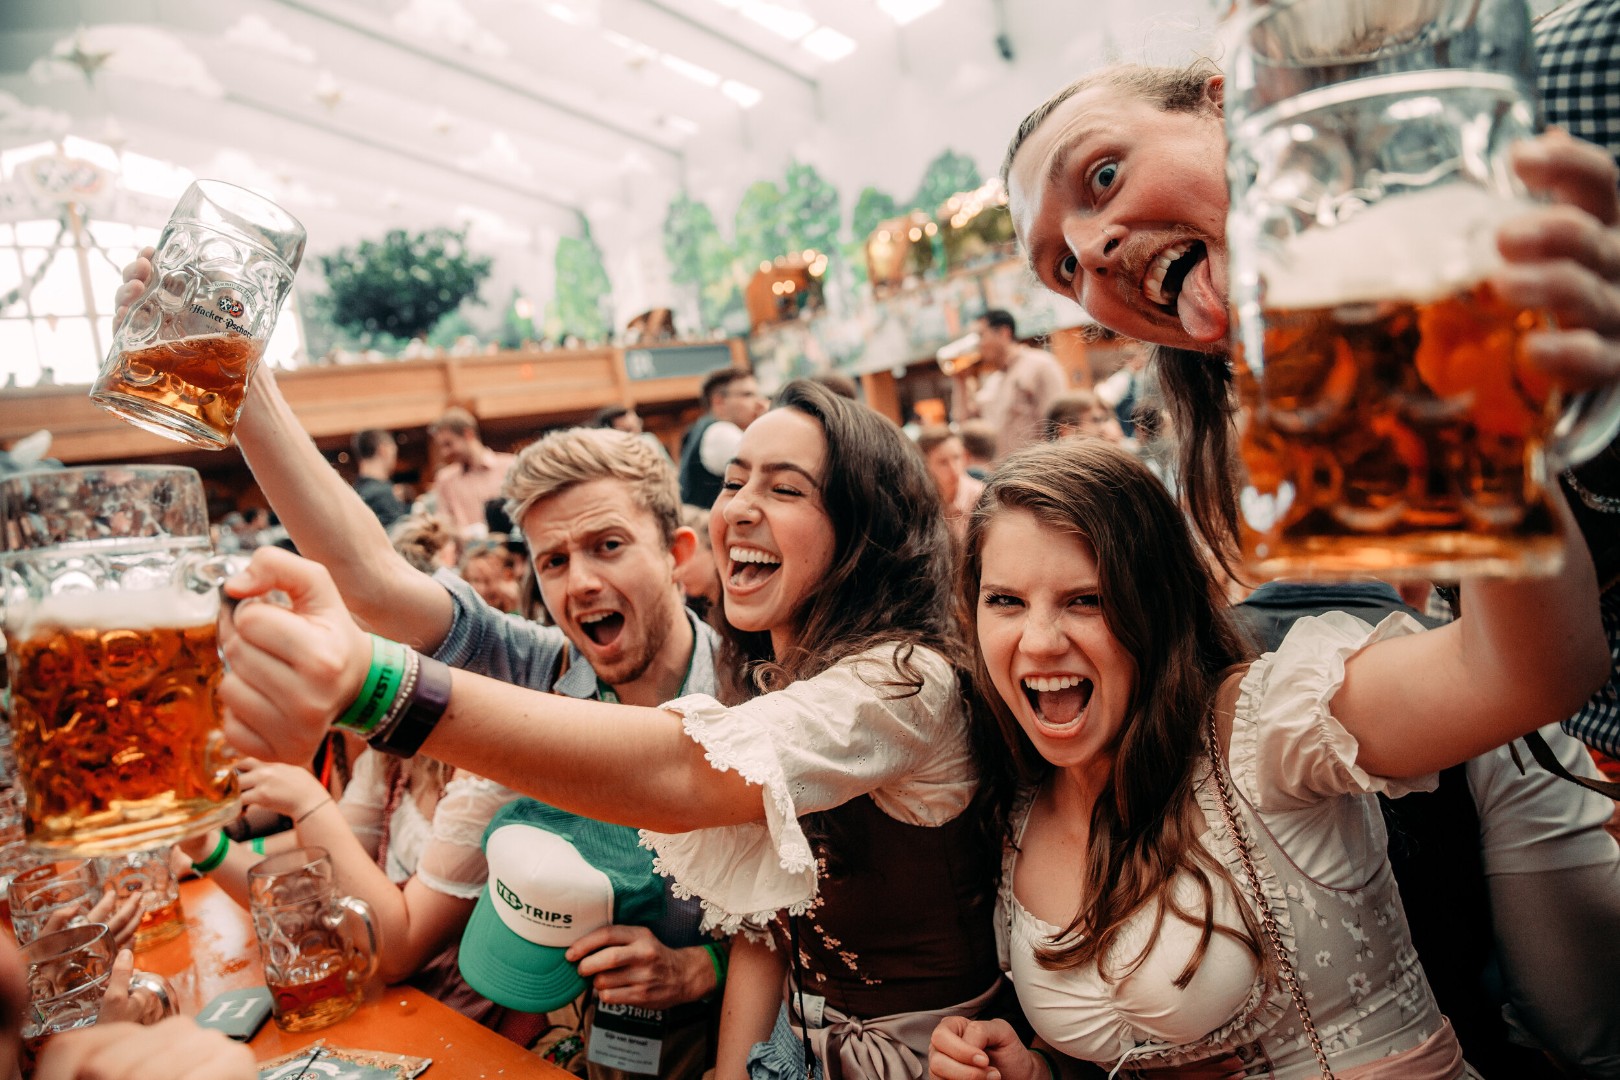 Krigla piva na ovogodišnjem Oktoberfestu nikad skuplja